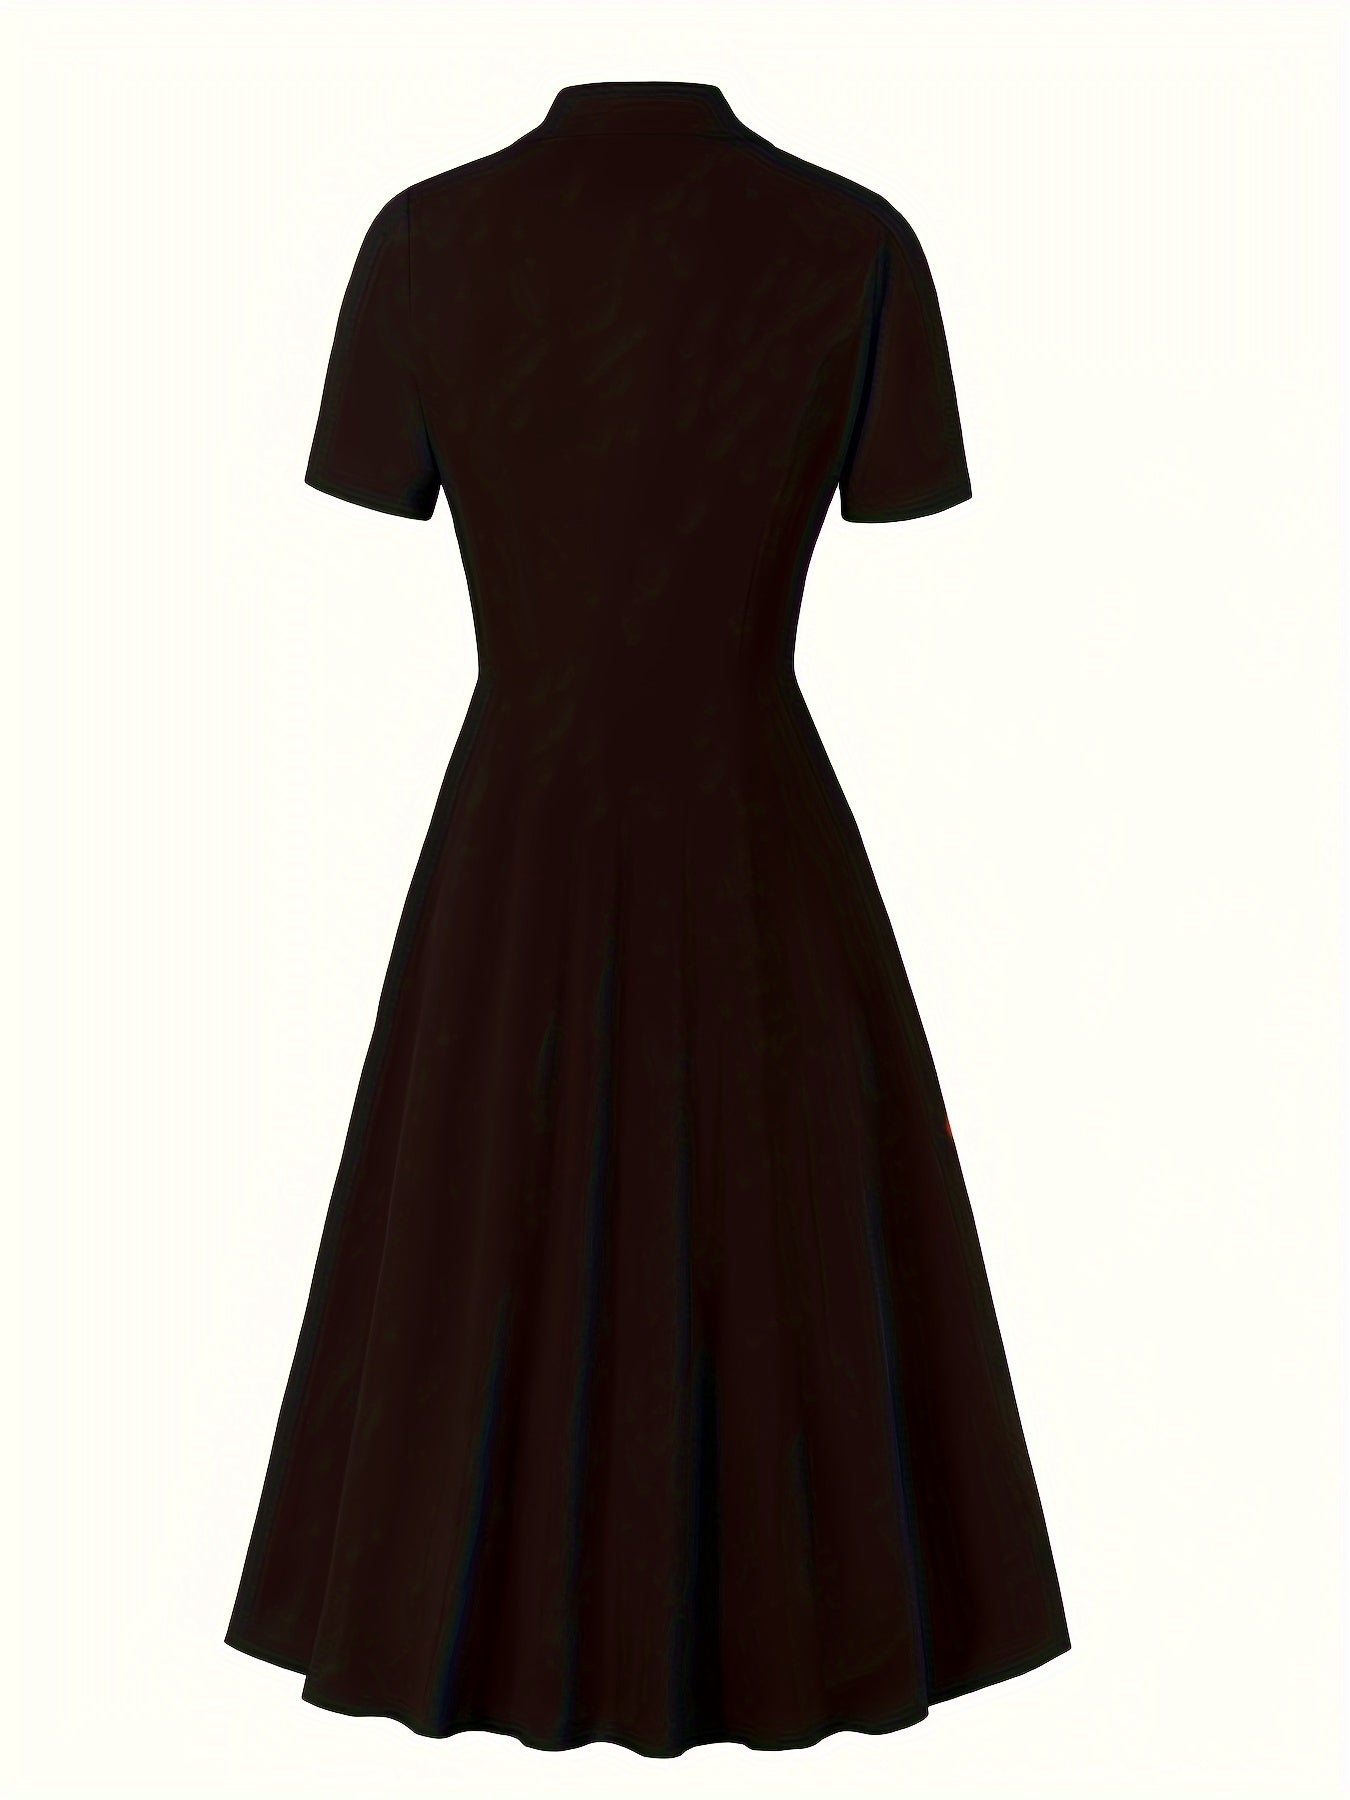 Antmvs Plus Size Retro Dress, Women's Plus Solid Double Breast Button Short Sleeve Lapel Collar A-line Maxi Suit Dress